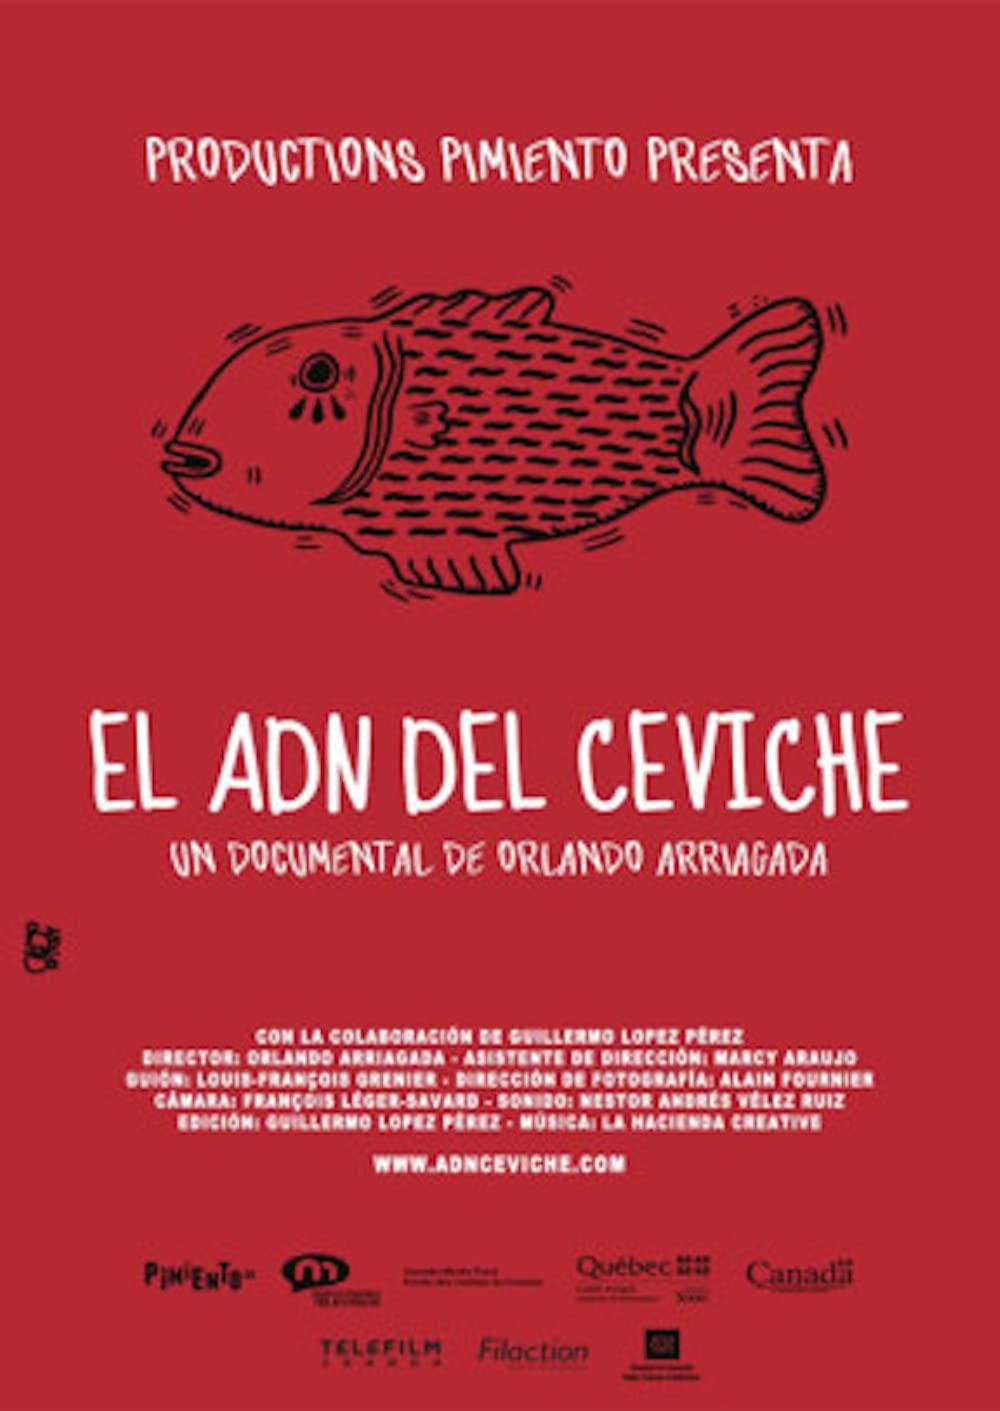 Filmbeschreibung zu Ceviche, mein Lieblingsessen aus Peru